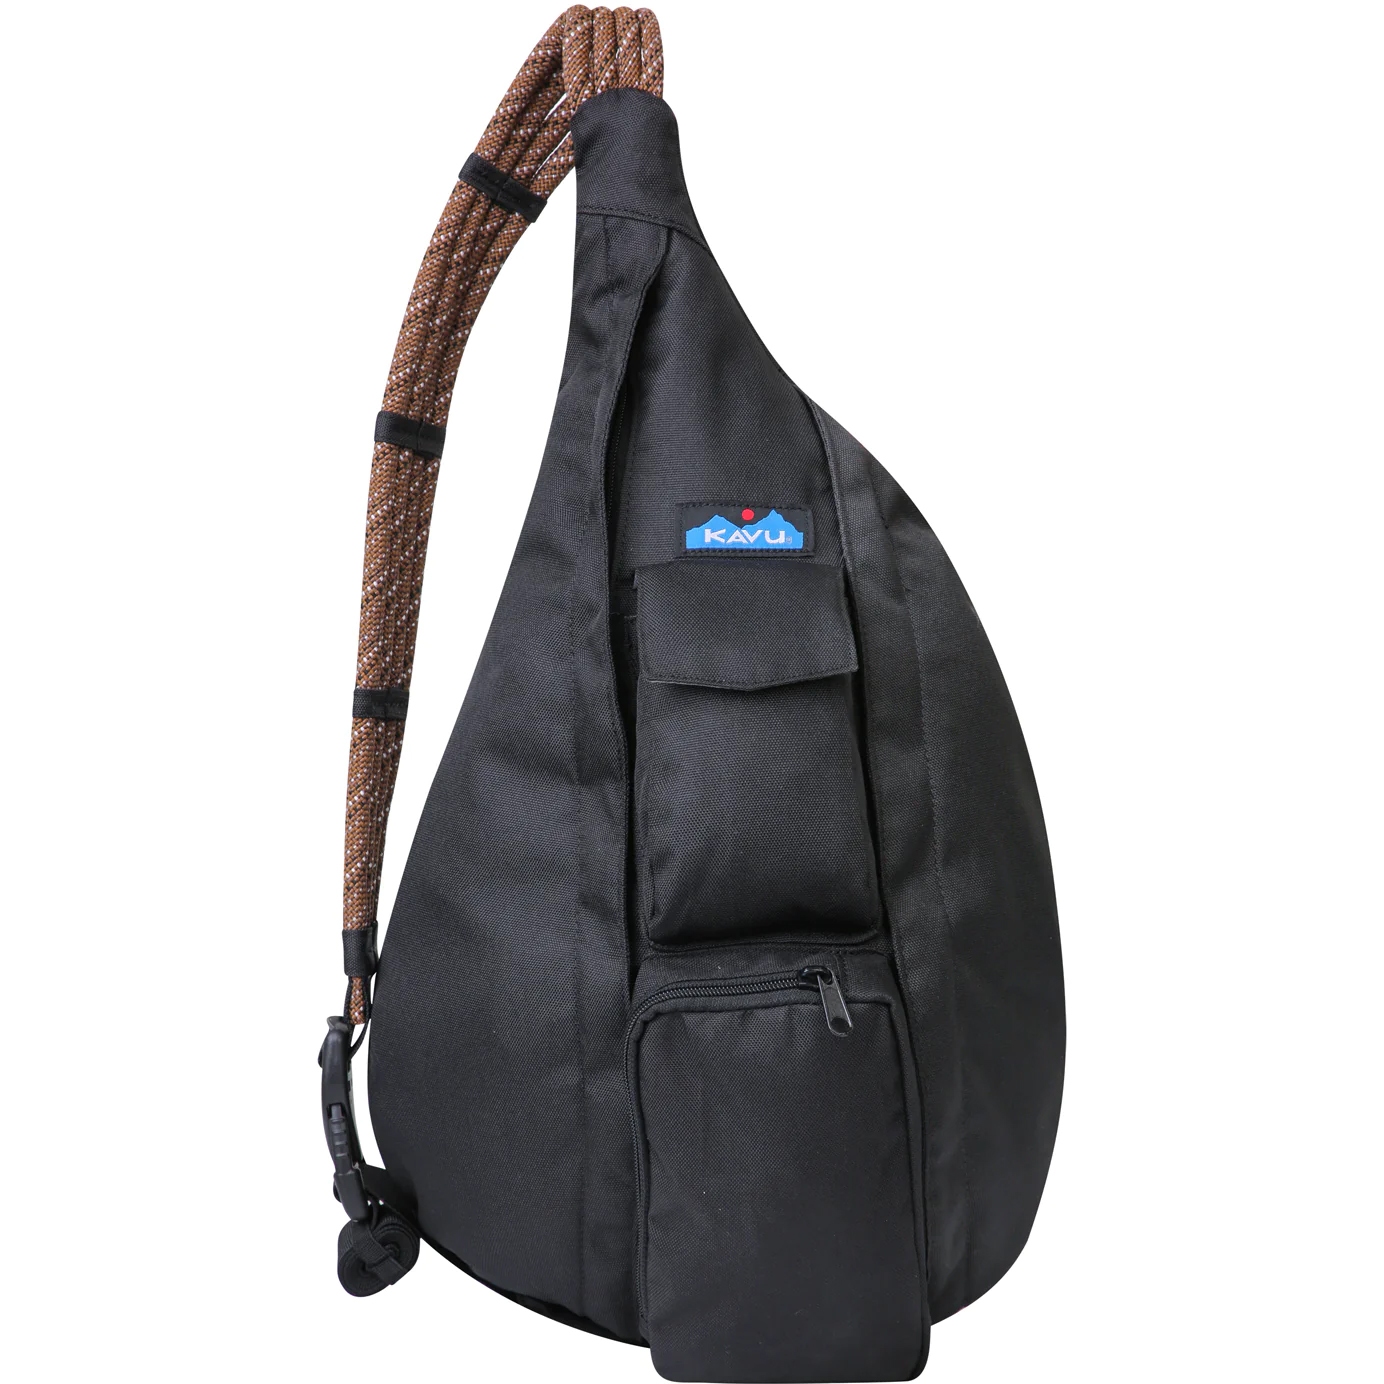 Produktbild von KAVU Rope Sling Tasche 10L - Jet Black